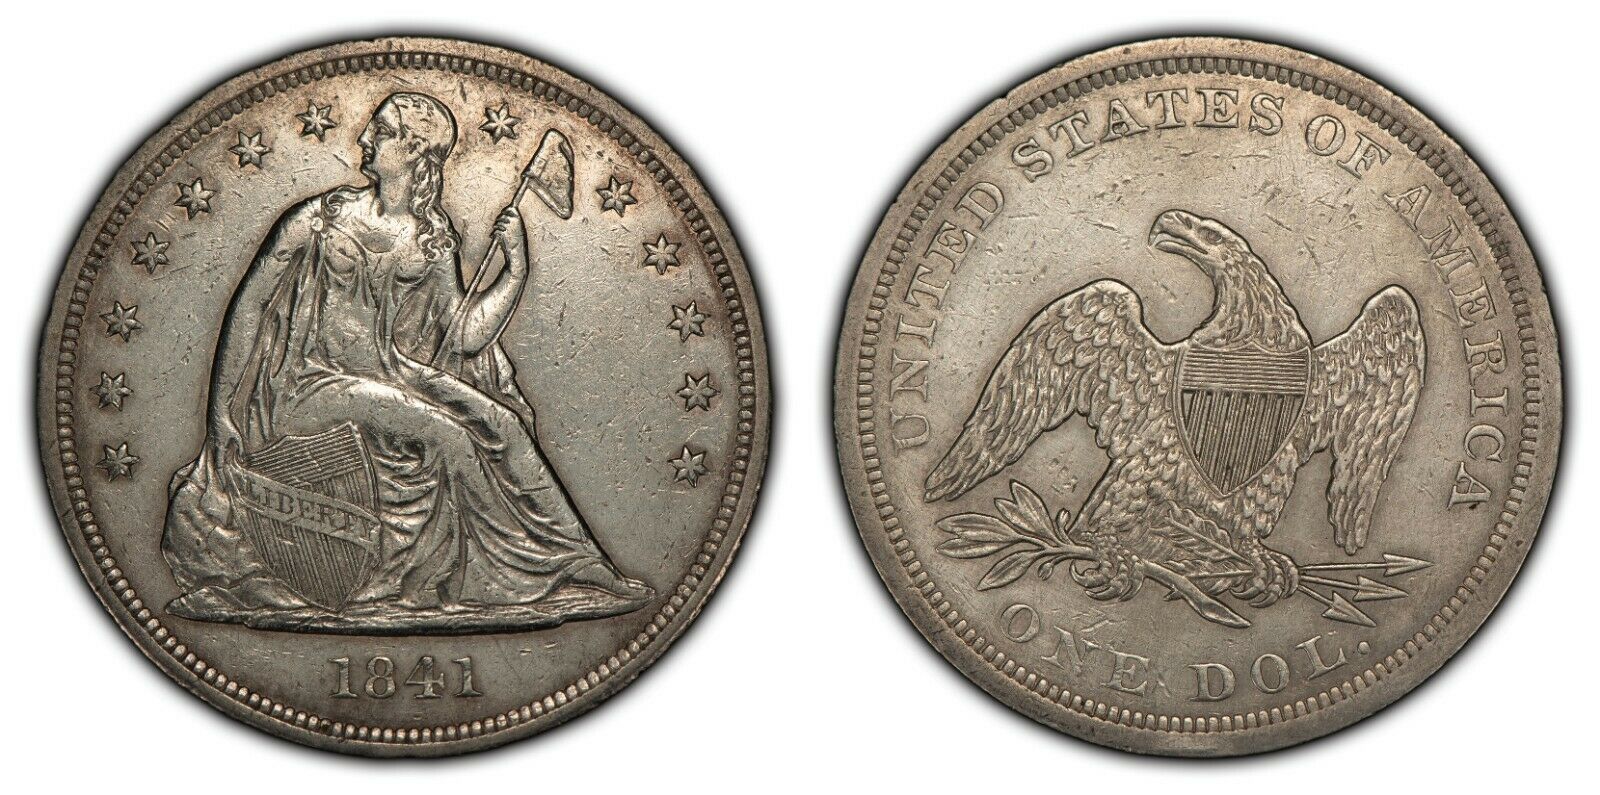 1841 $1 Seated Liberty Silver Dollar - Xf/au Details - Sku-b1336